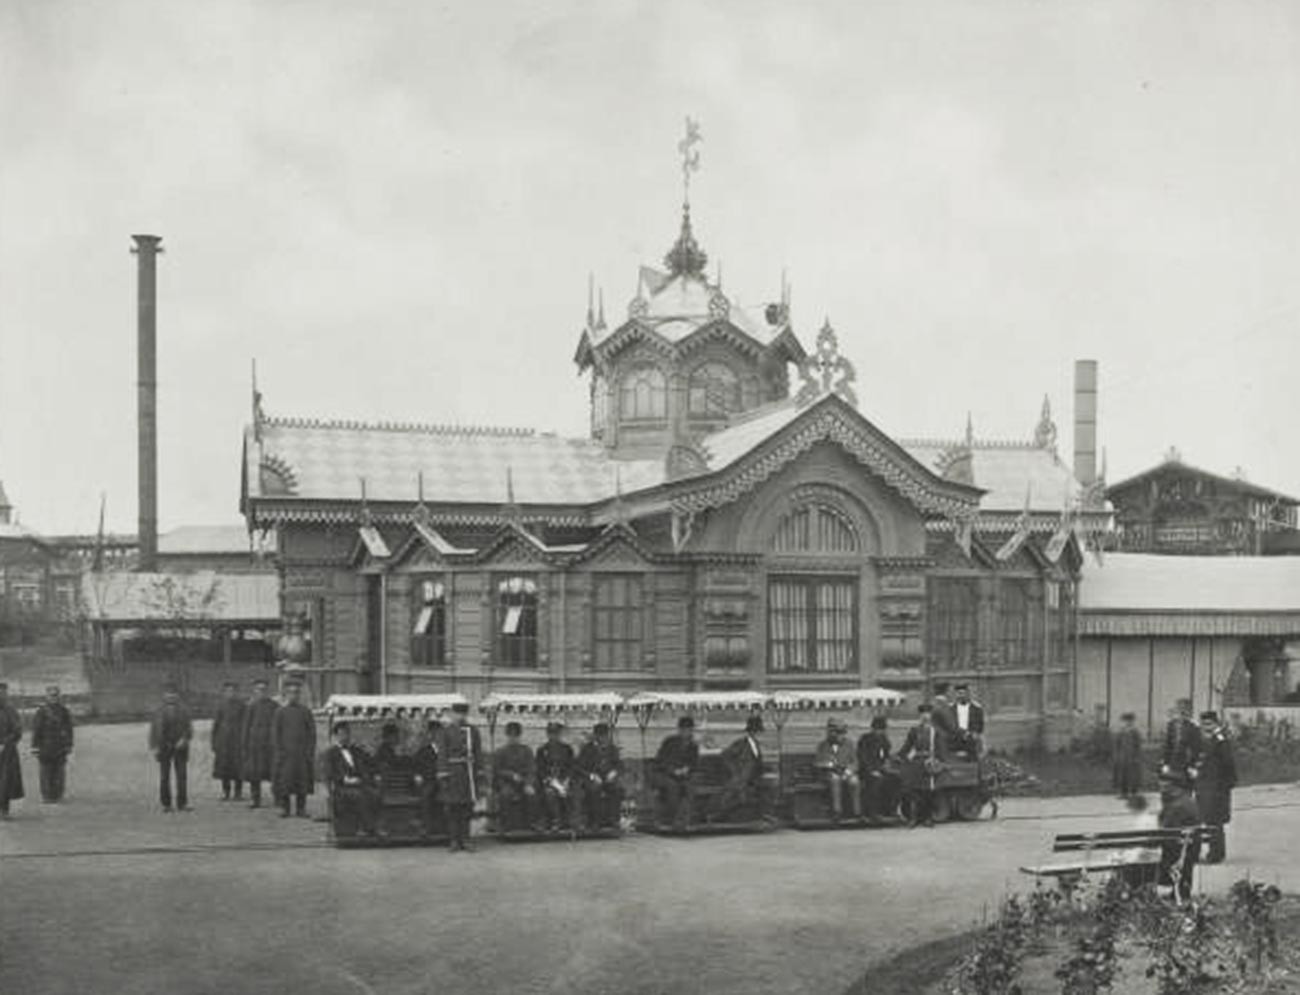 Pavillon de Siemens et Halske (chemins de fer électriques). L'exposition panrusse d'art et d'industrie de 1882 sur le champ de Khodynka à Moscou.